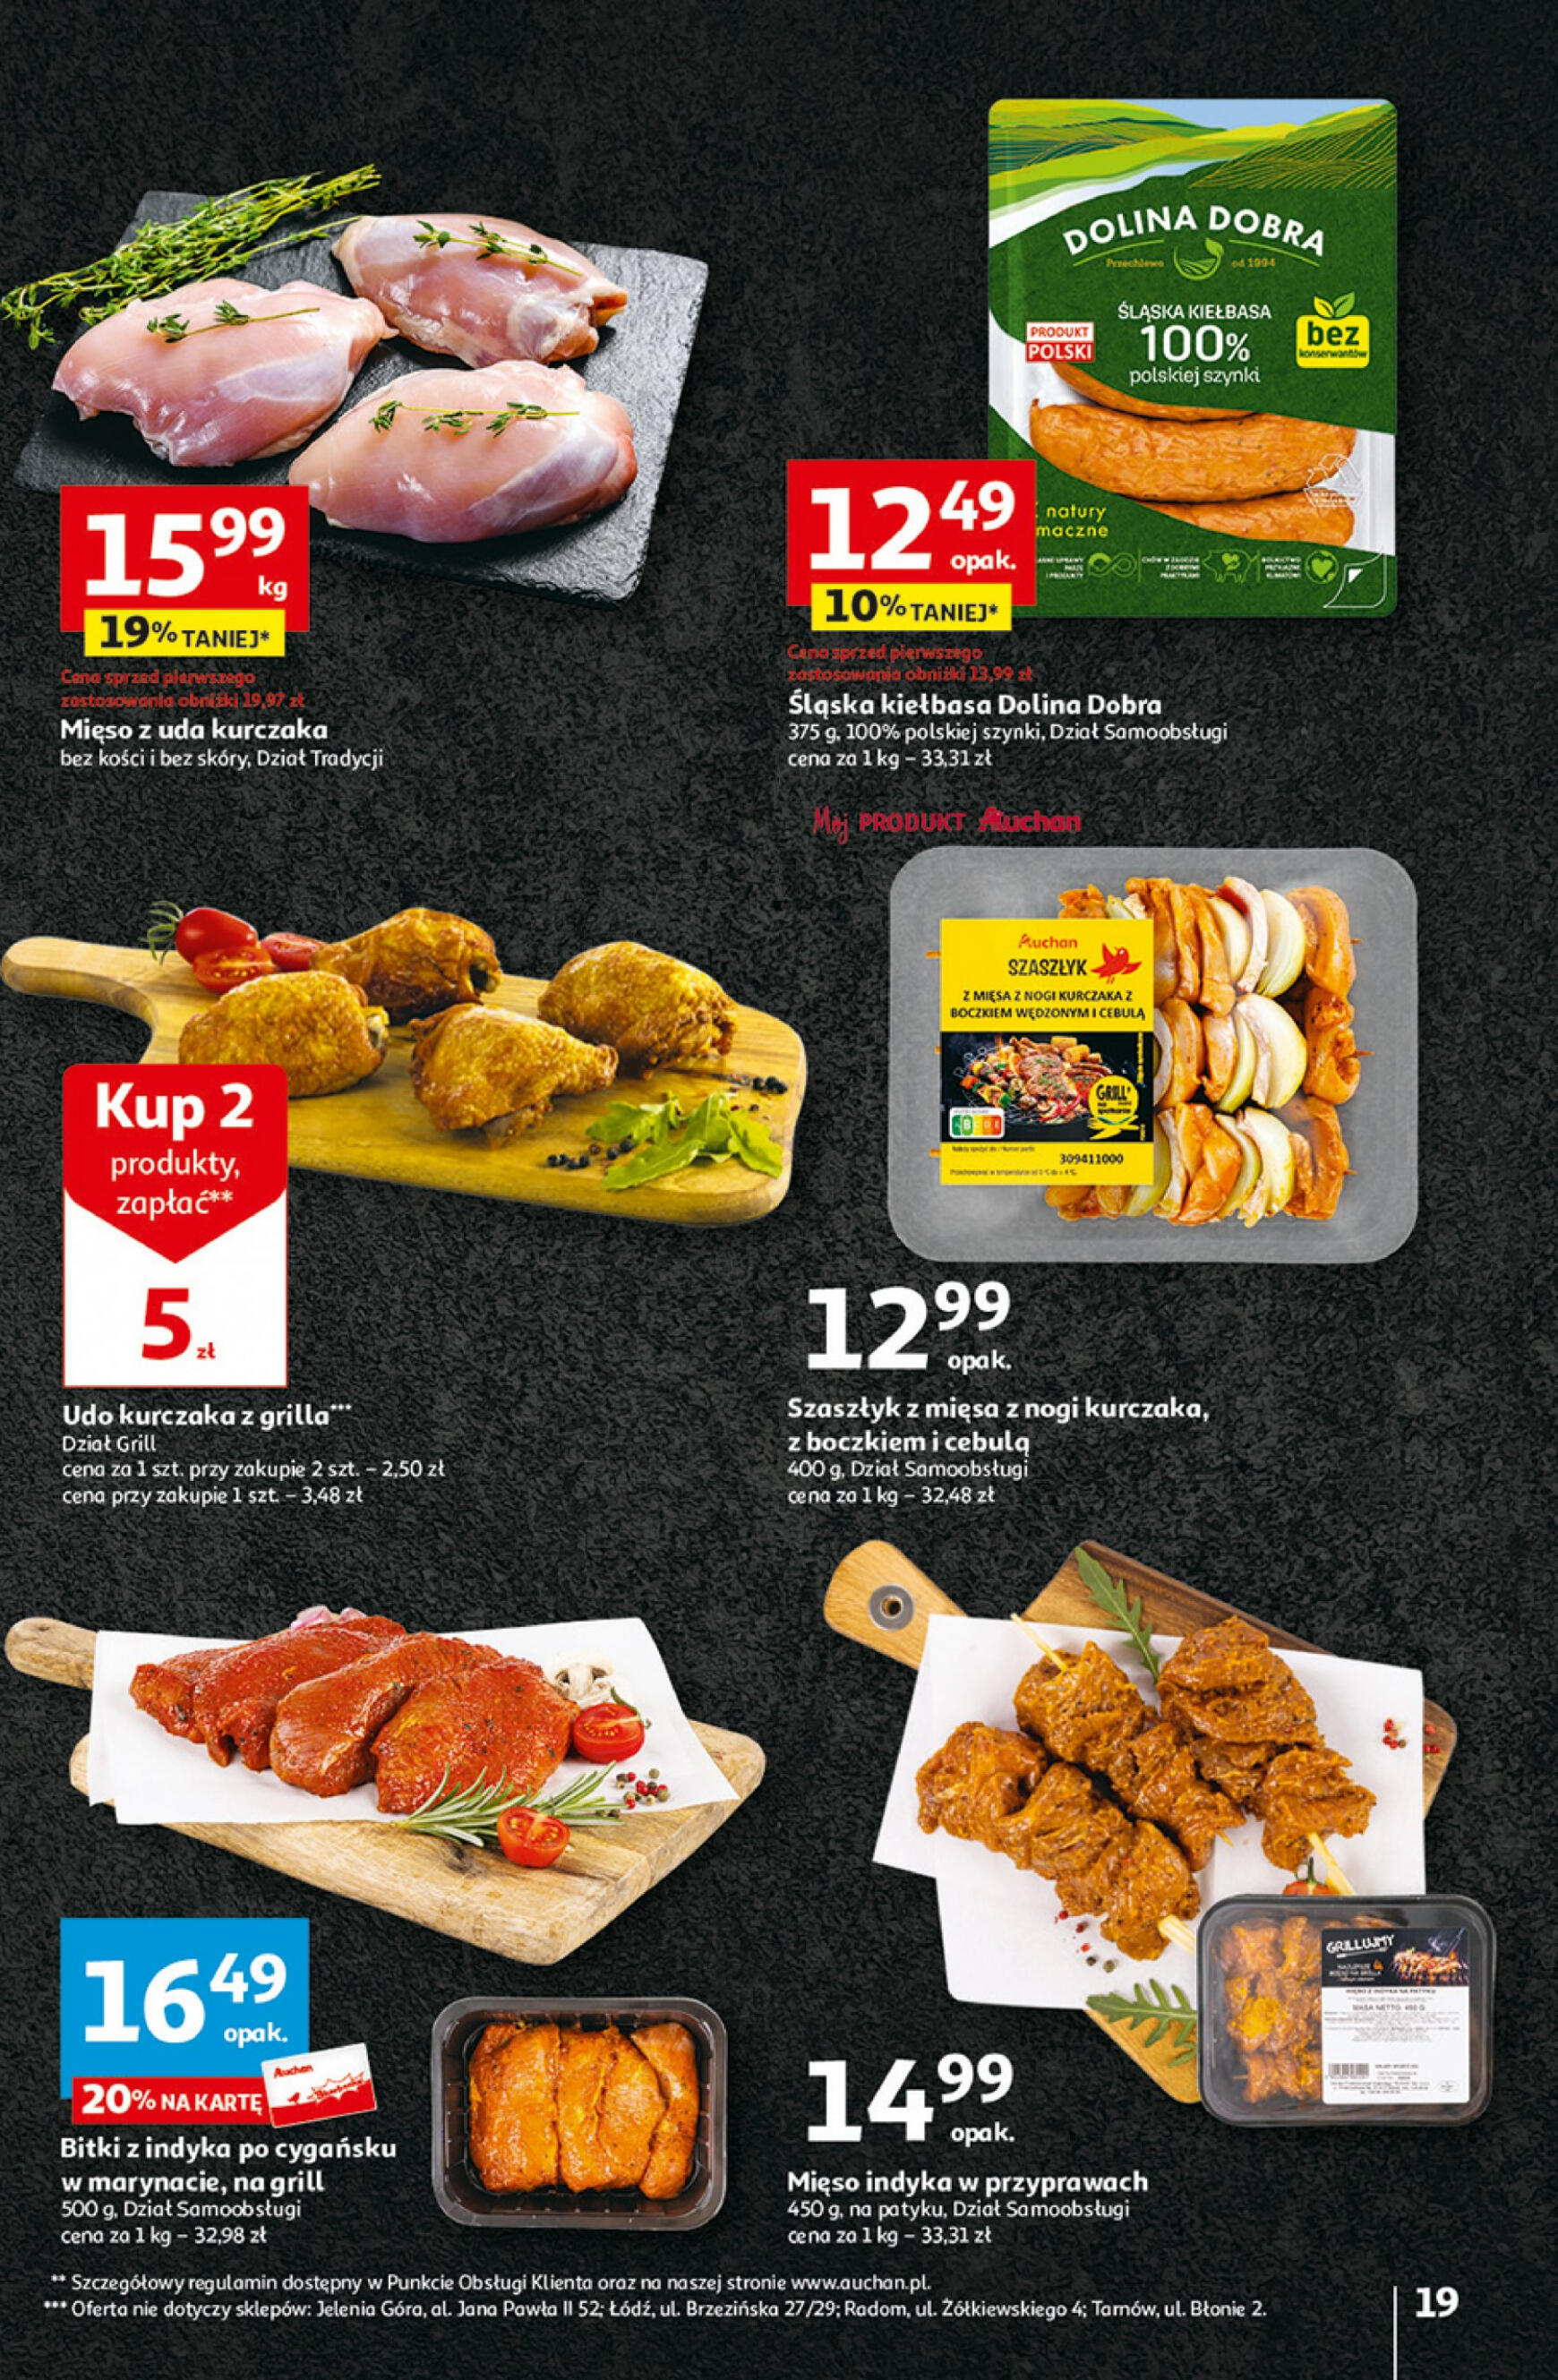 auchan - Hipermarket Auchan - Gazetka Aktywność na świeżym powietrzu! gazetka aktualna ważna od 11.04. - 17.04. - page: 19